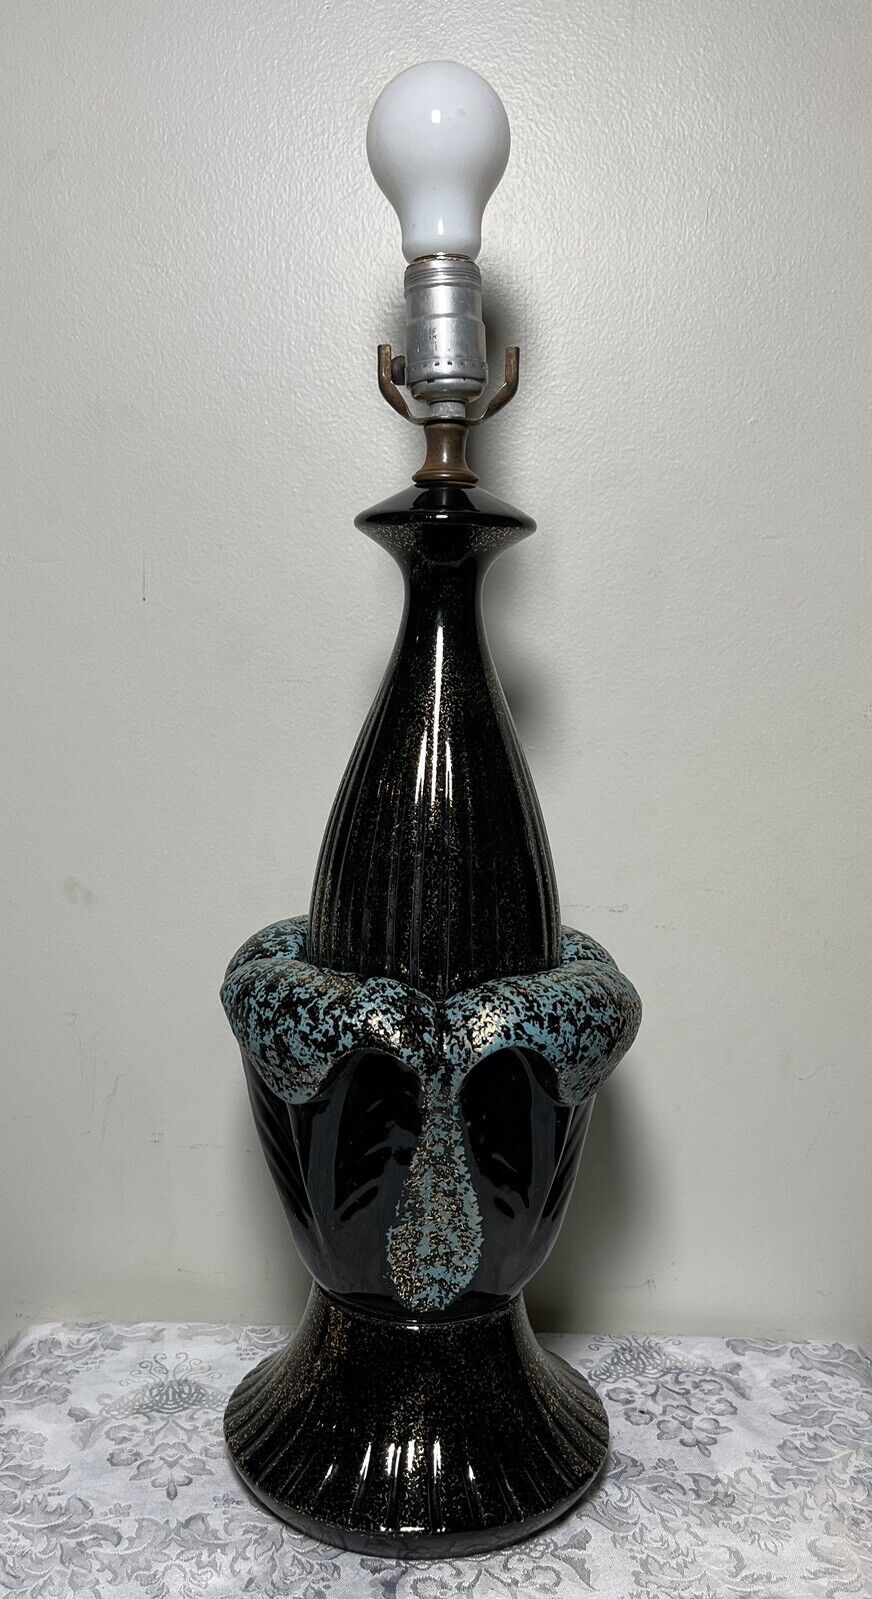 Lrg Vtg Ceramic Art Pottery Table Lamp Mid Century Modern FUNKY Blue Gold Black